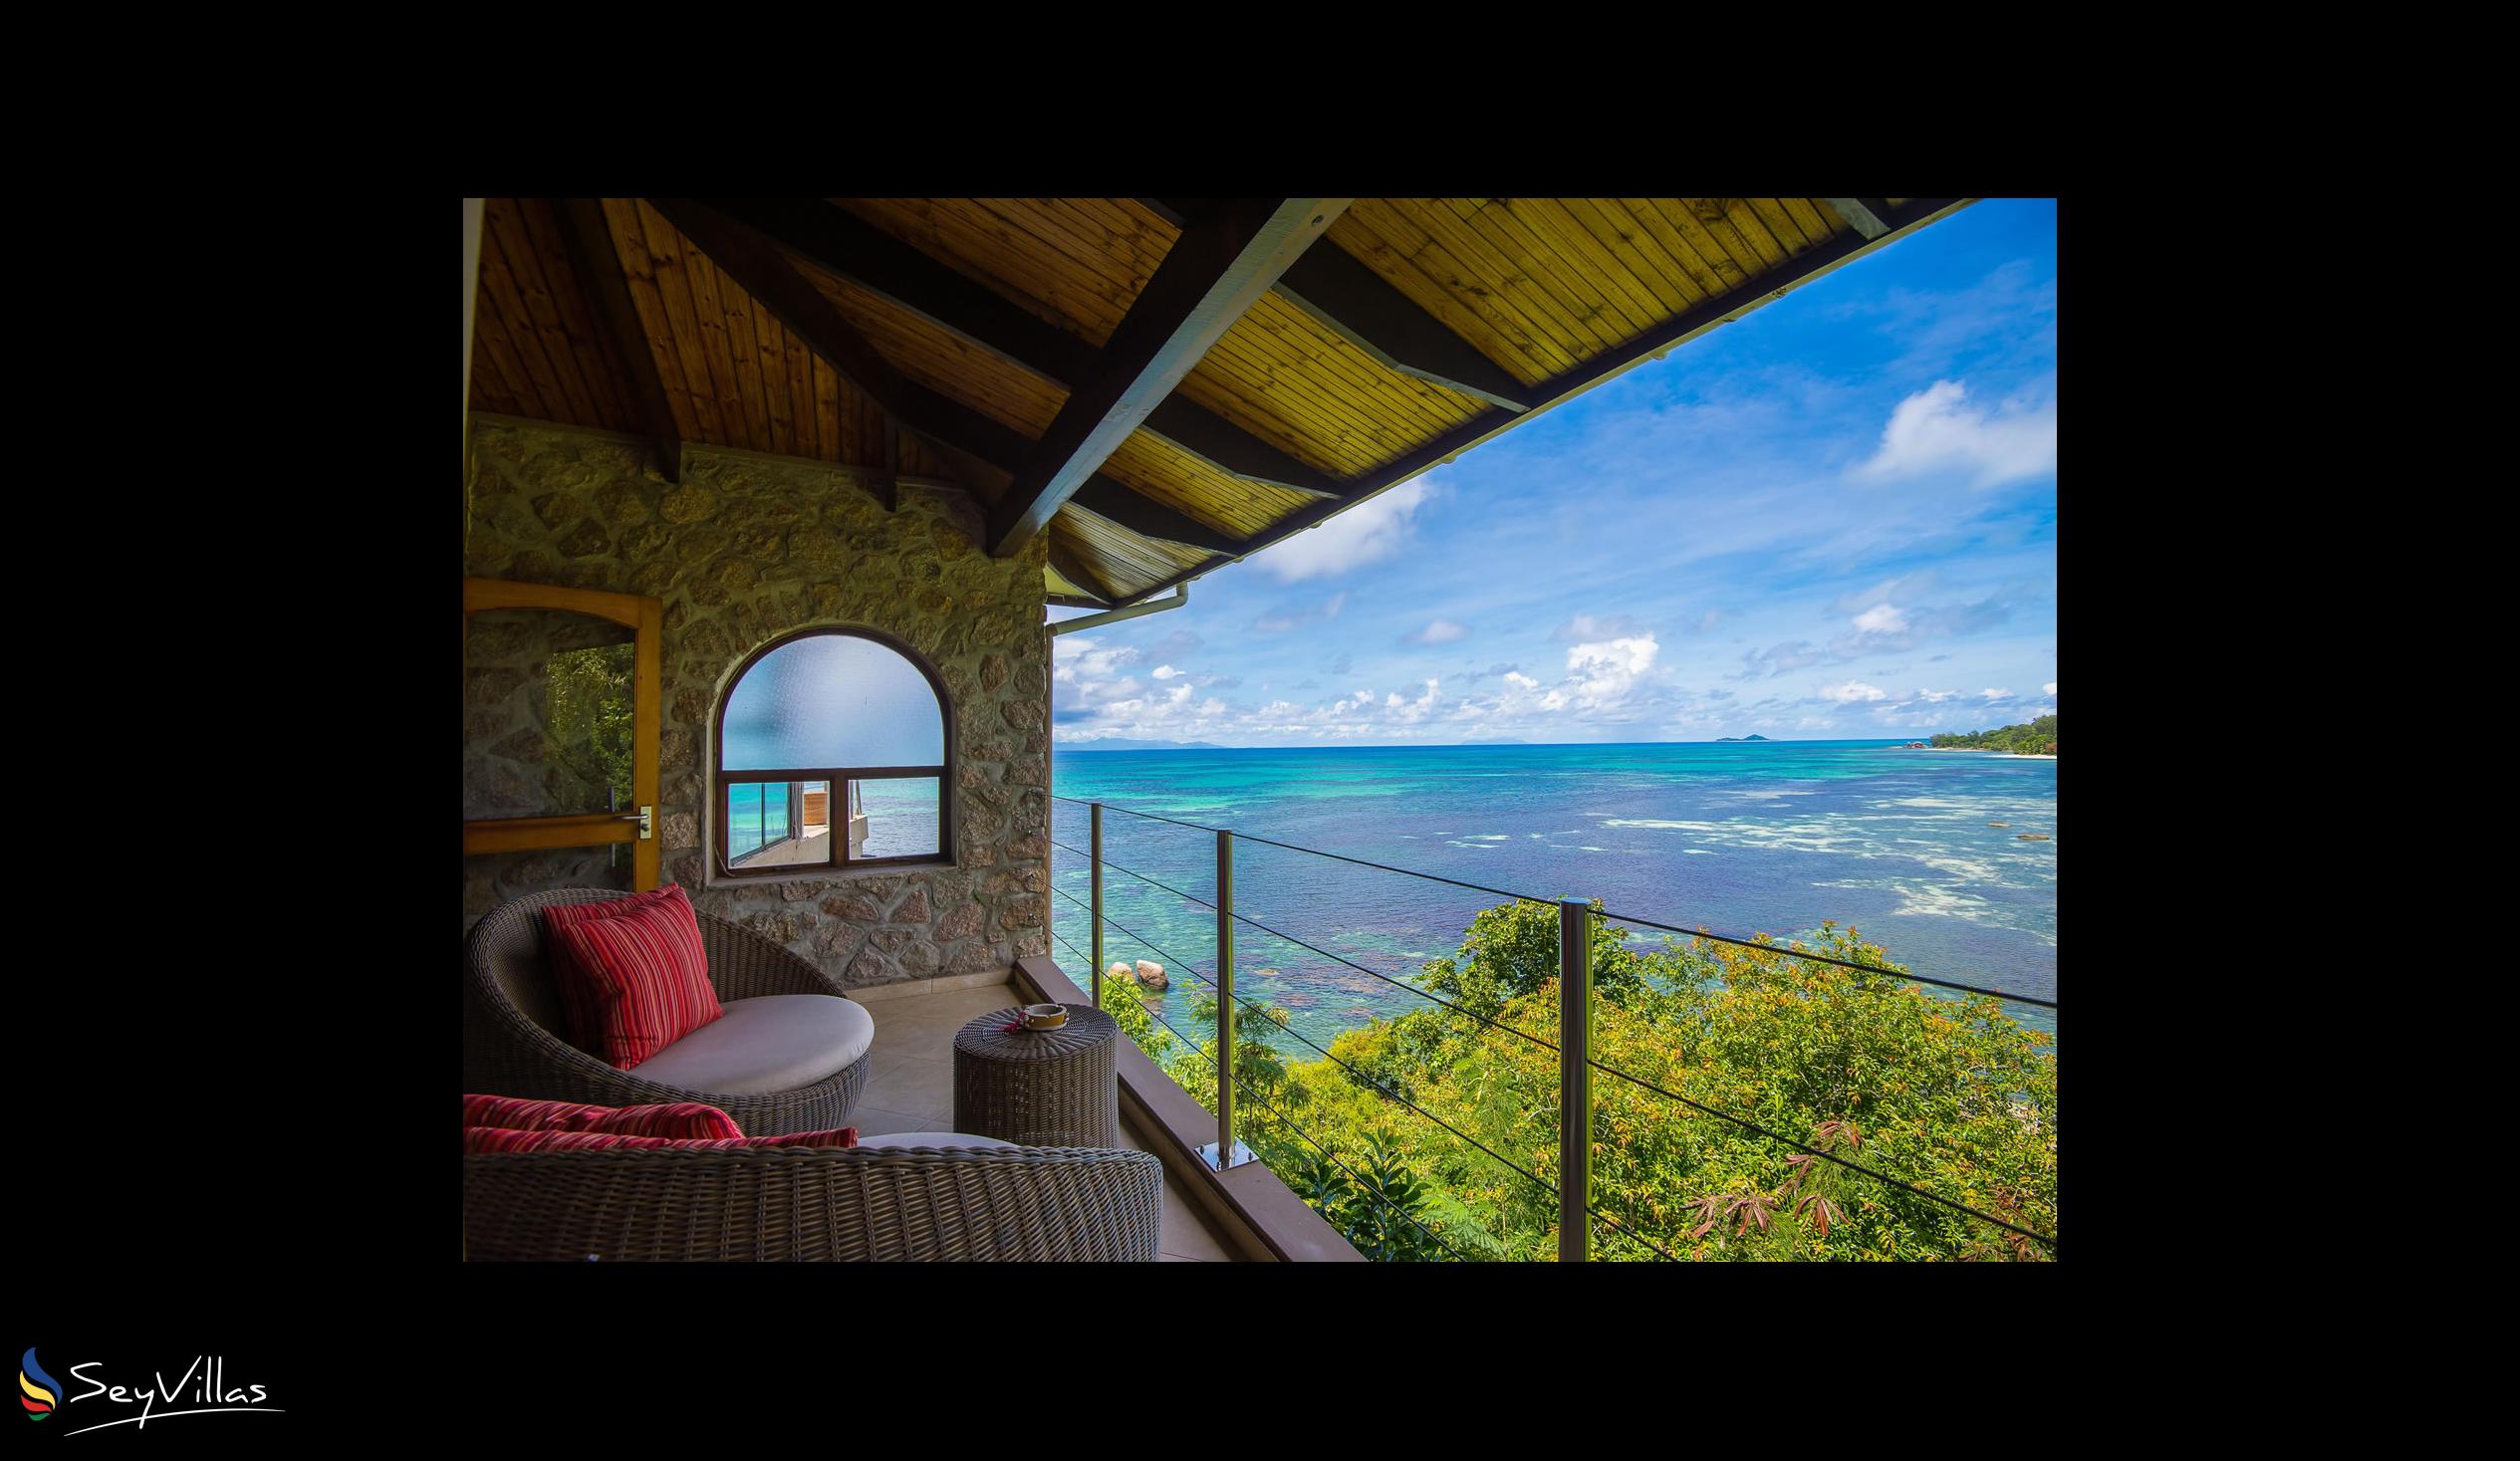 Photo 89: Coco de Mer & Black Parrot Suites - Black Parrot Junior Suite - Praslin (Seychelles)